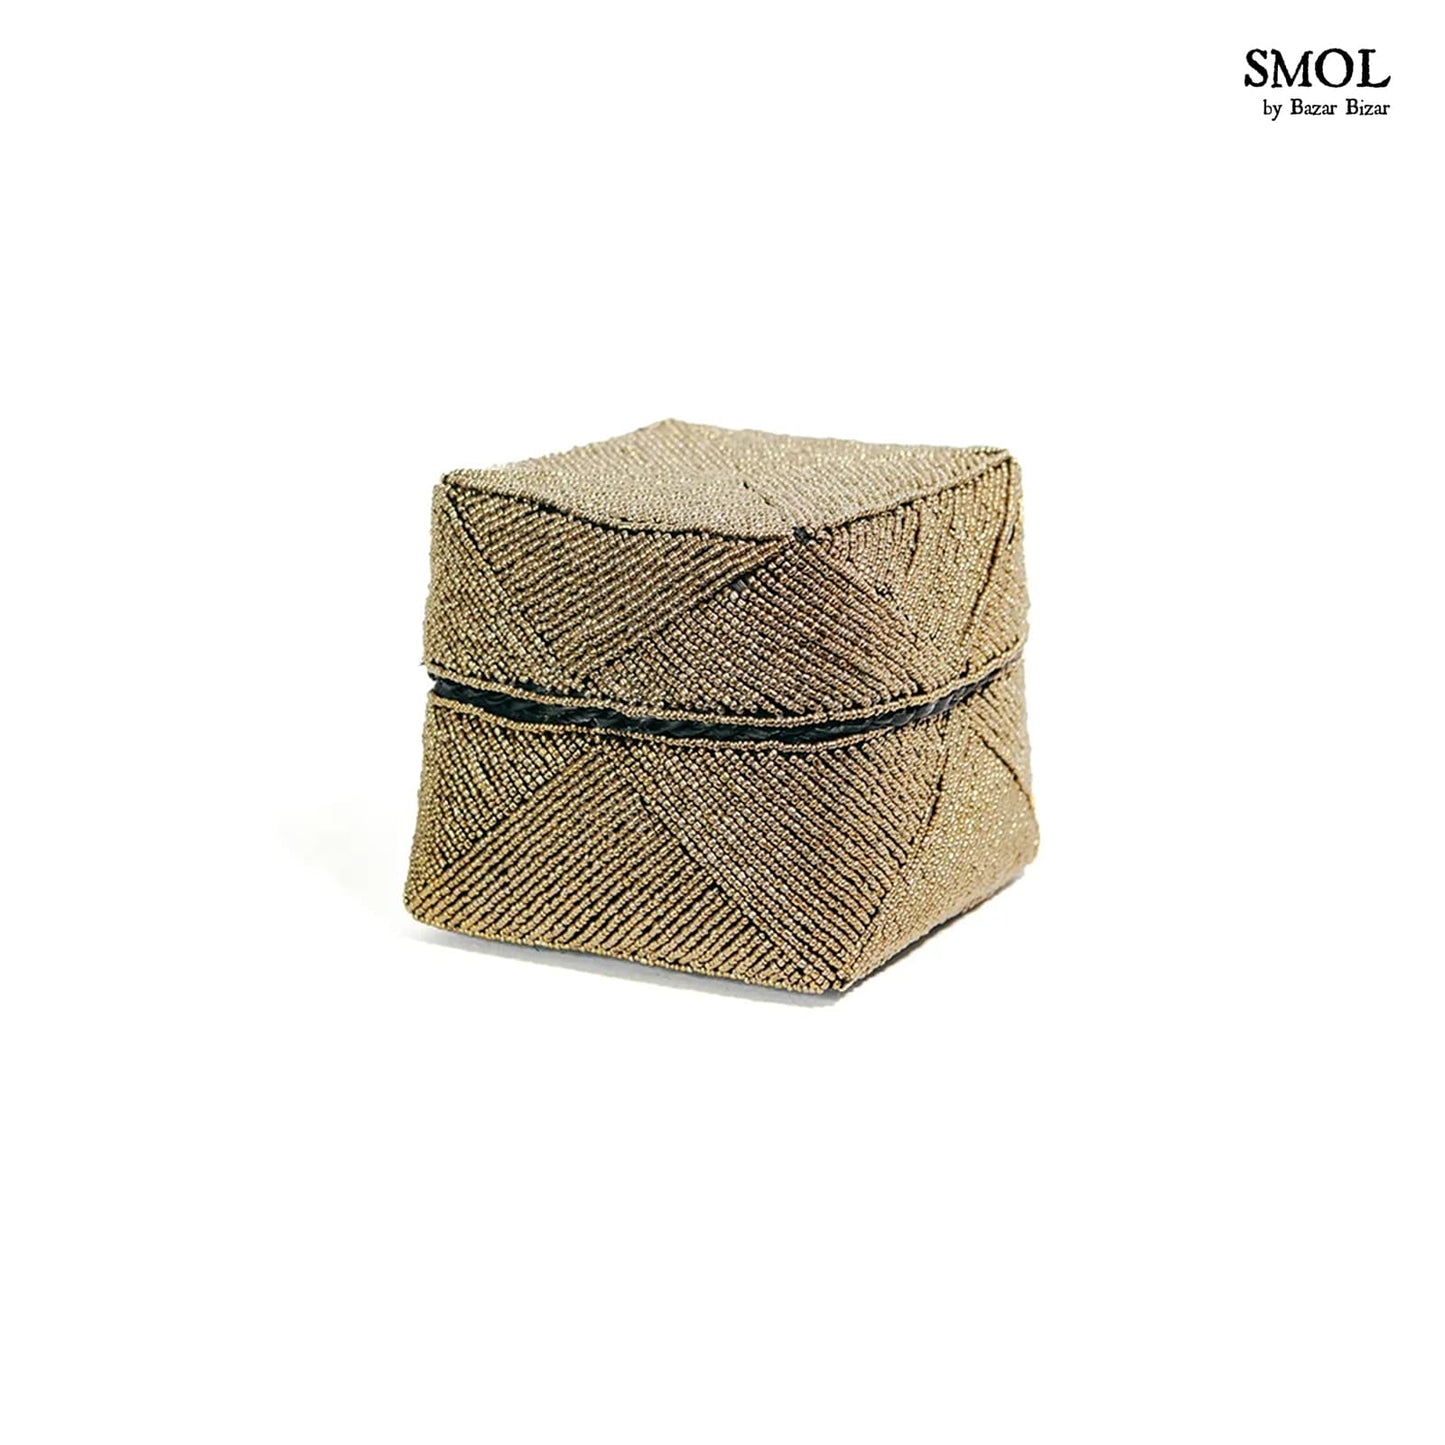 smol.hu -GOODE, 3 db-os, arany gyöngyös, bambuszkosár szett, 15 cm legkisebb kosár